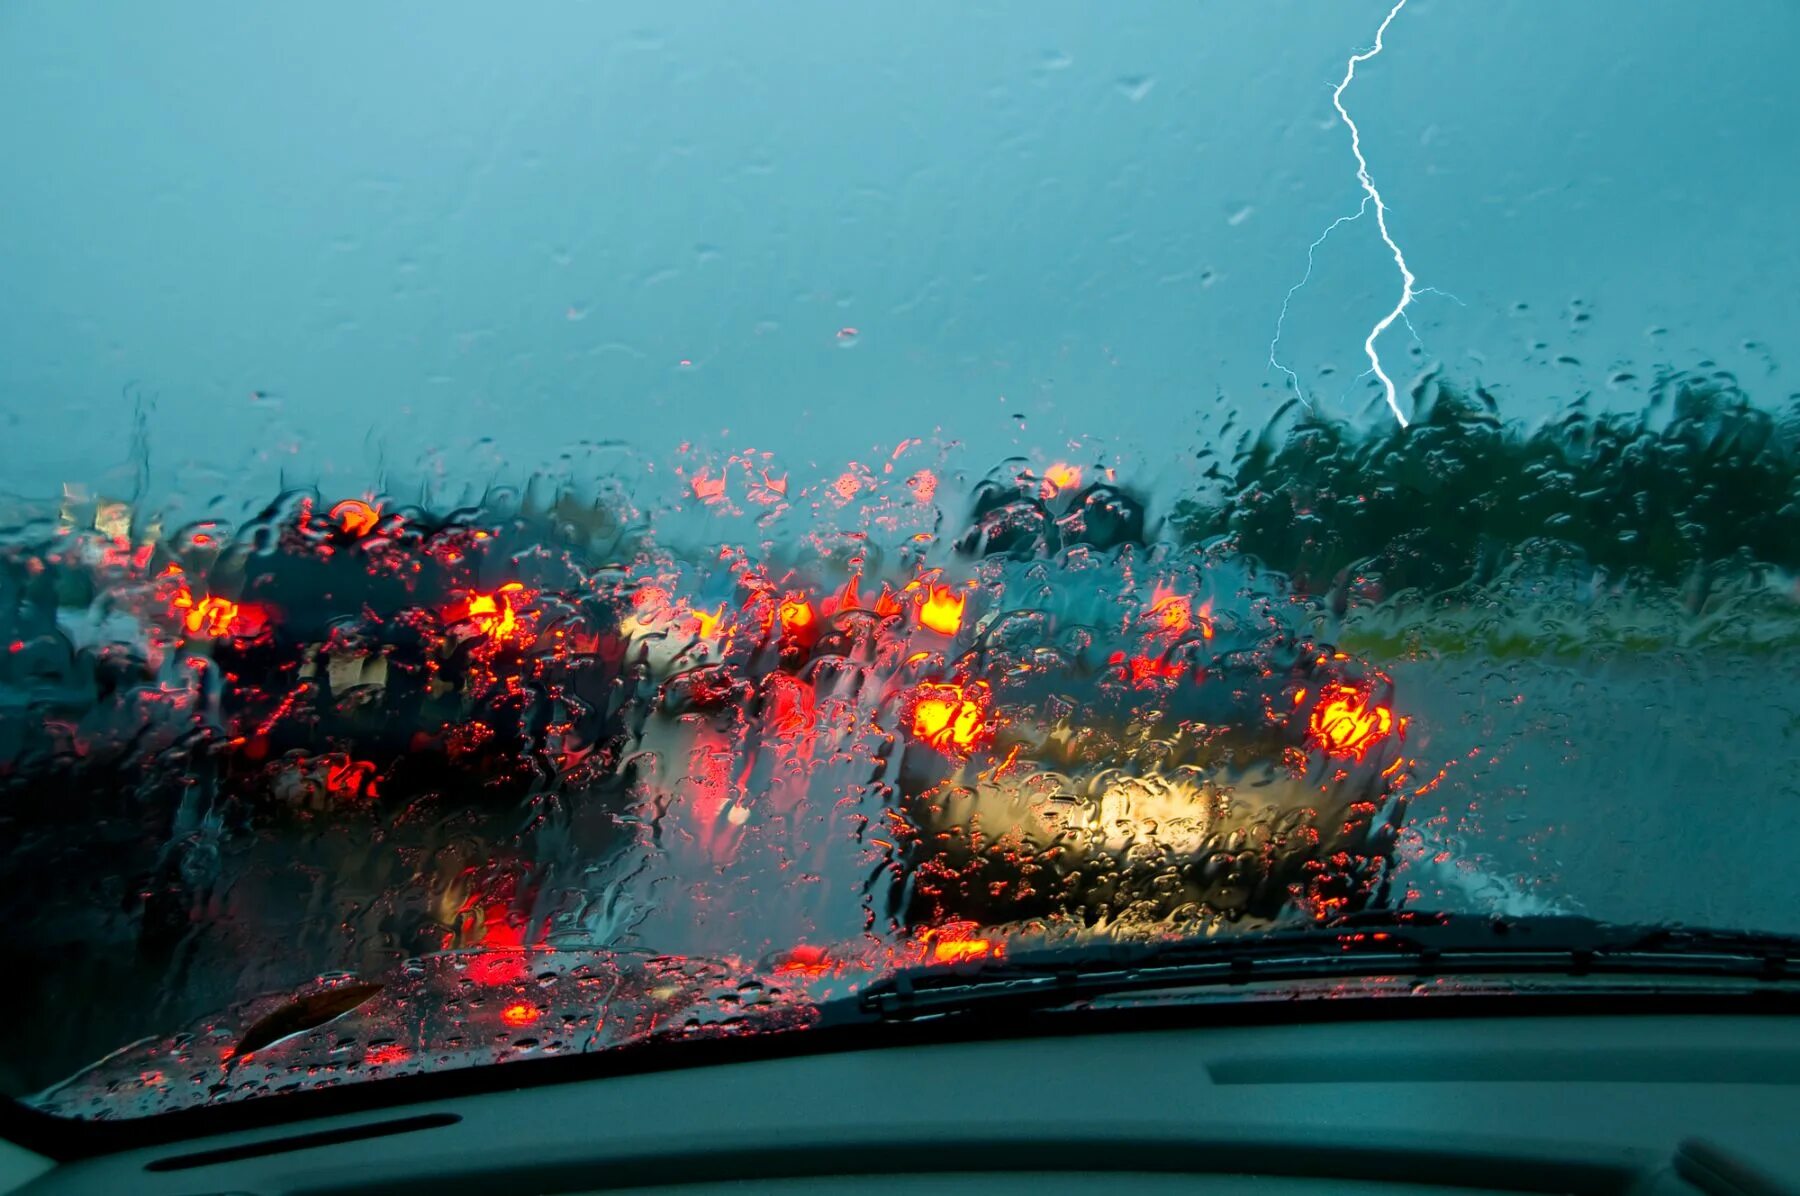 Driver rain. Авто в дождь. Вождение в дождь. Машина под дождем. Езда в ливень на автомобиле.